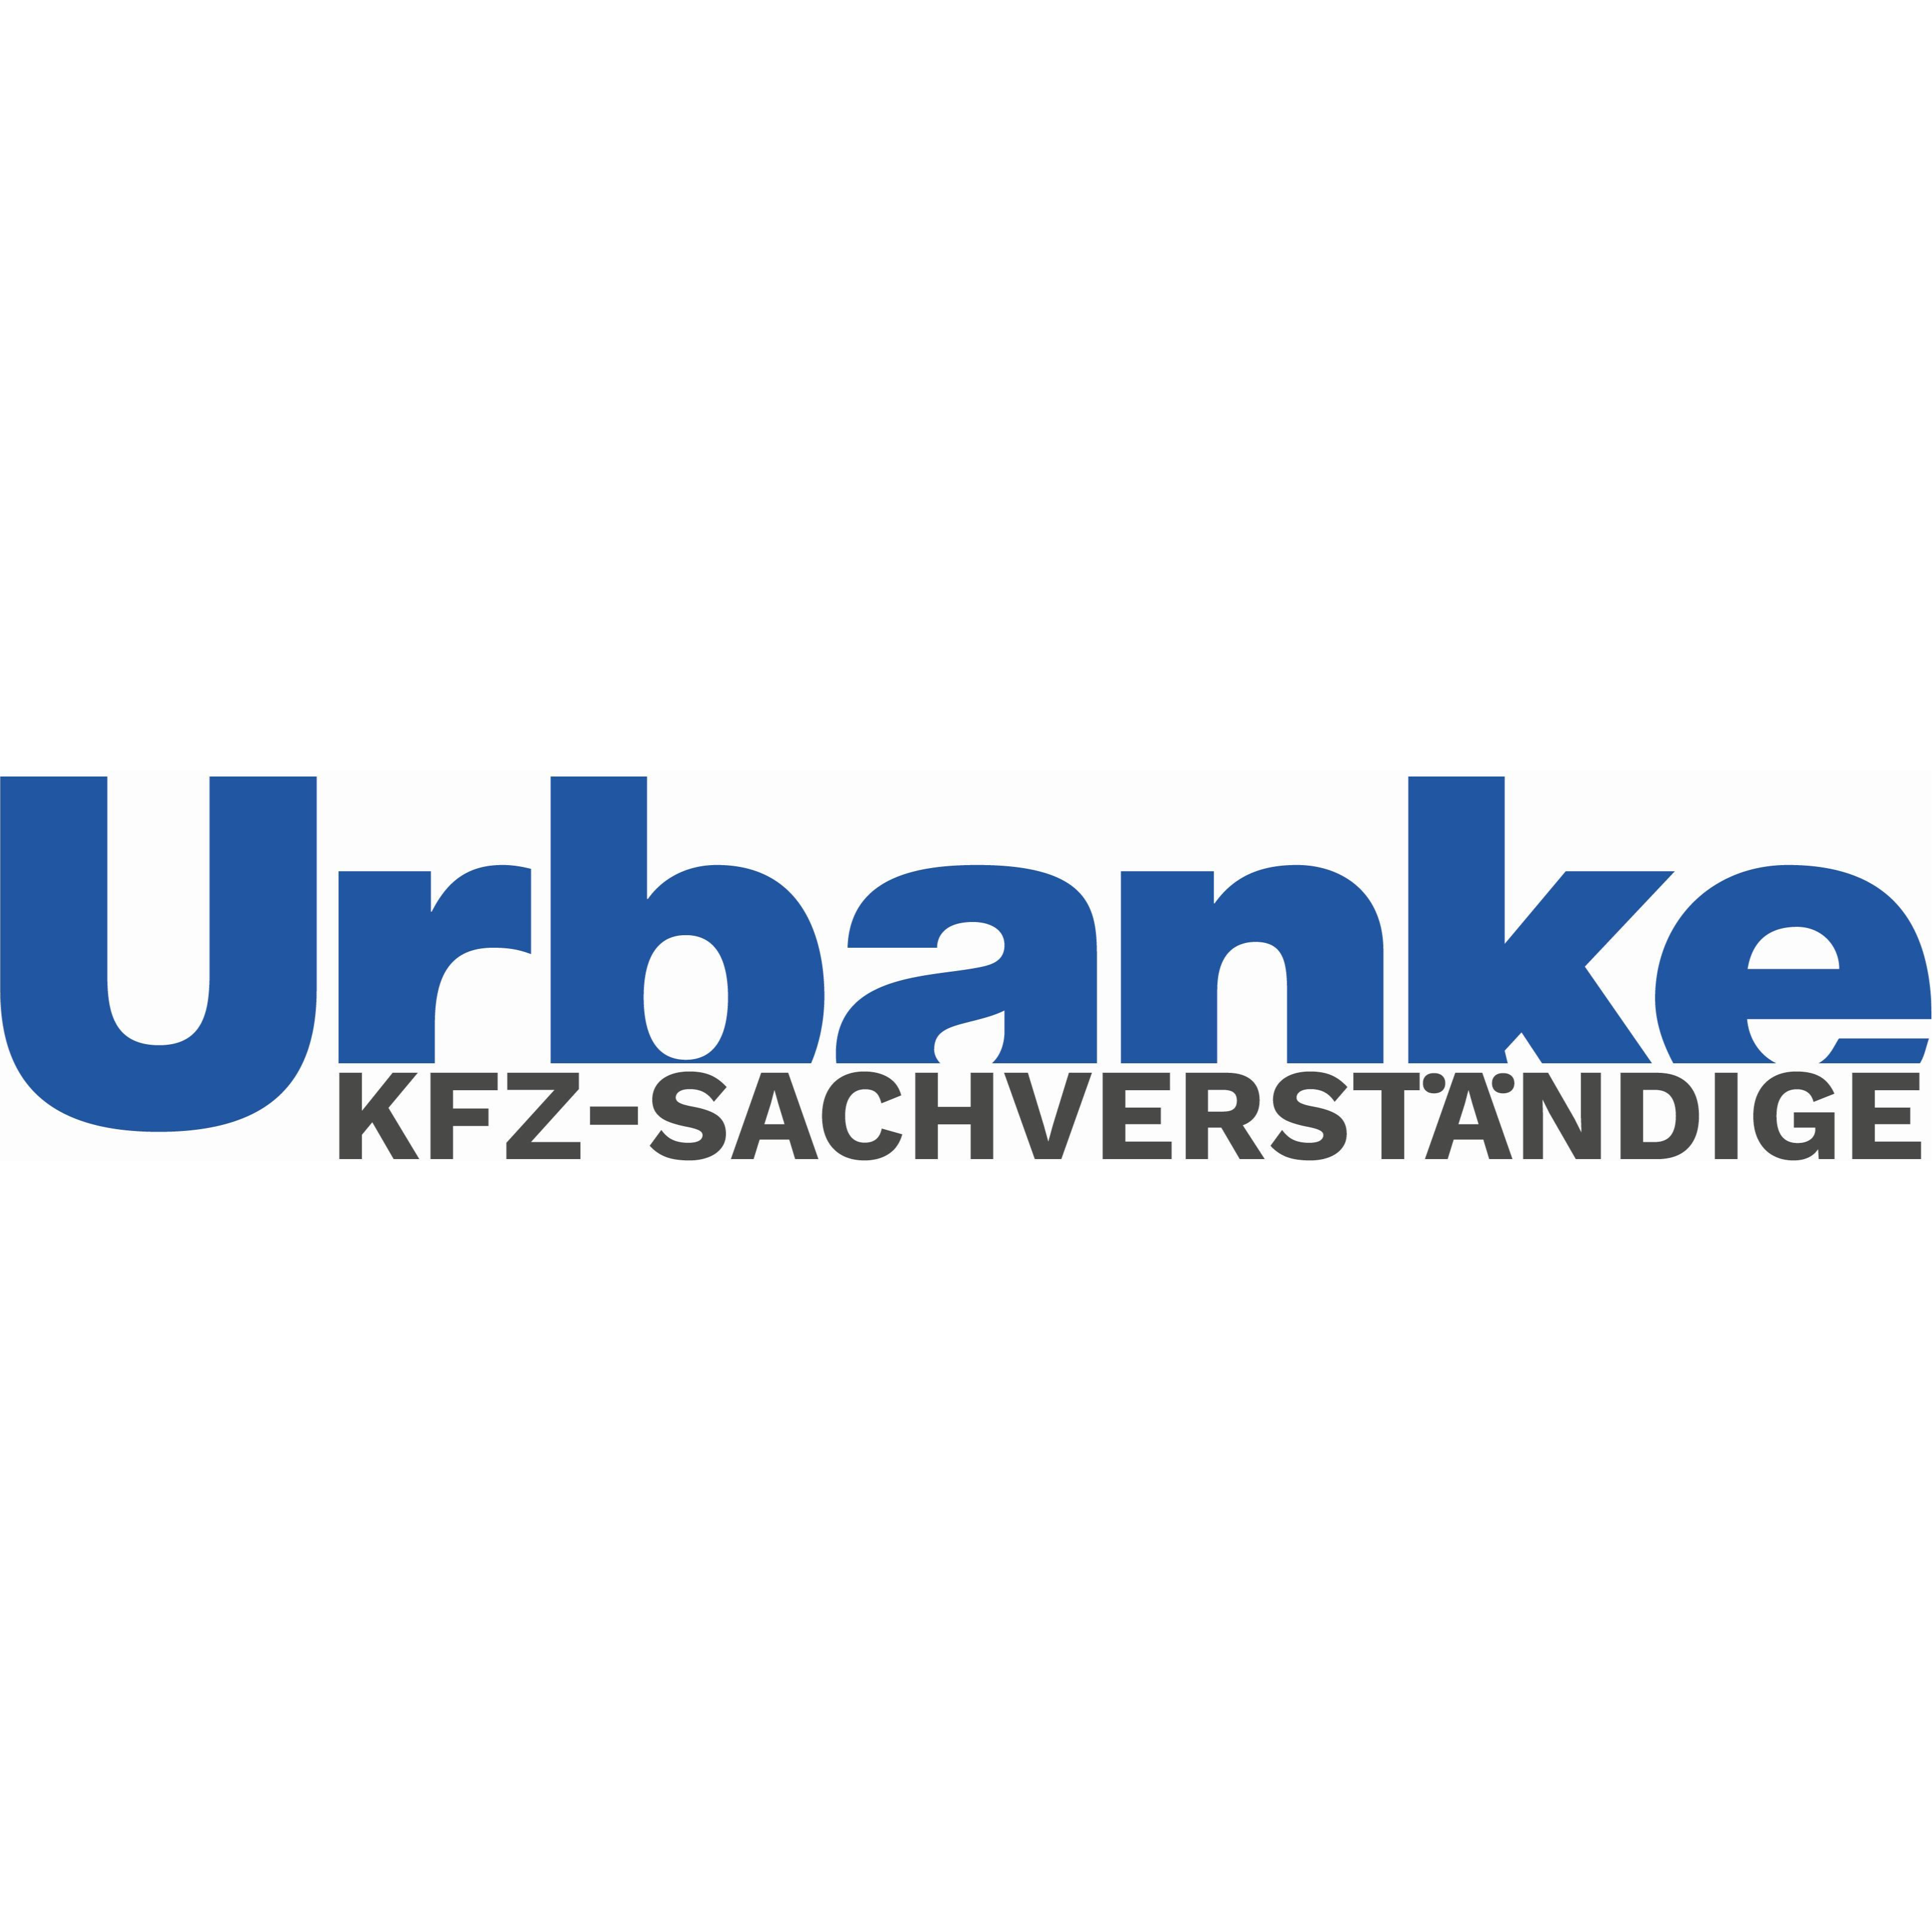 Bild zu Kfz-Sachverständige Urbanke & Partner in Berlin